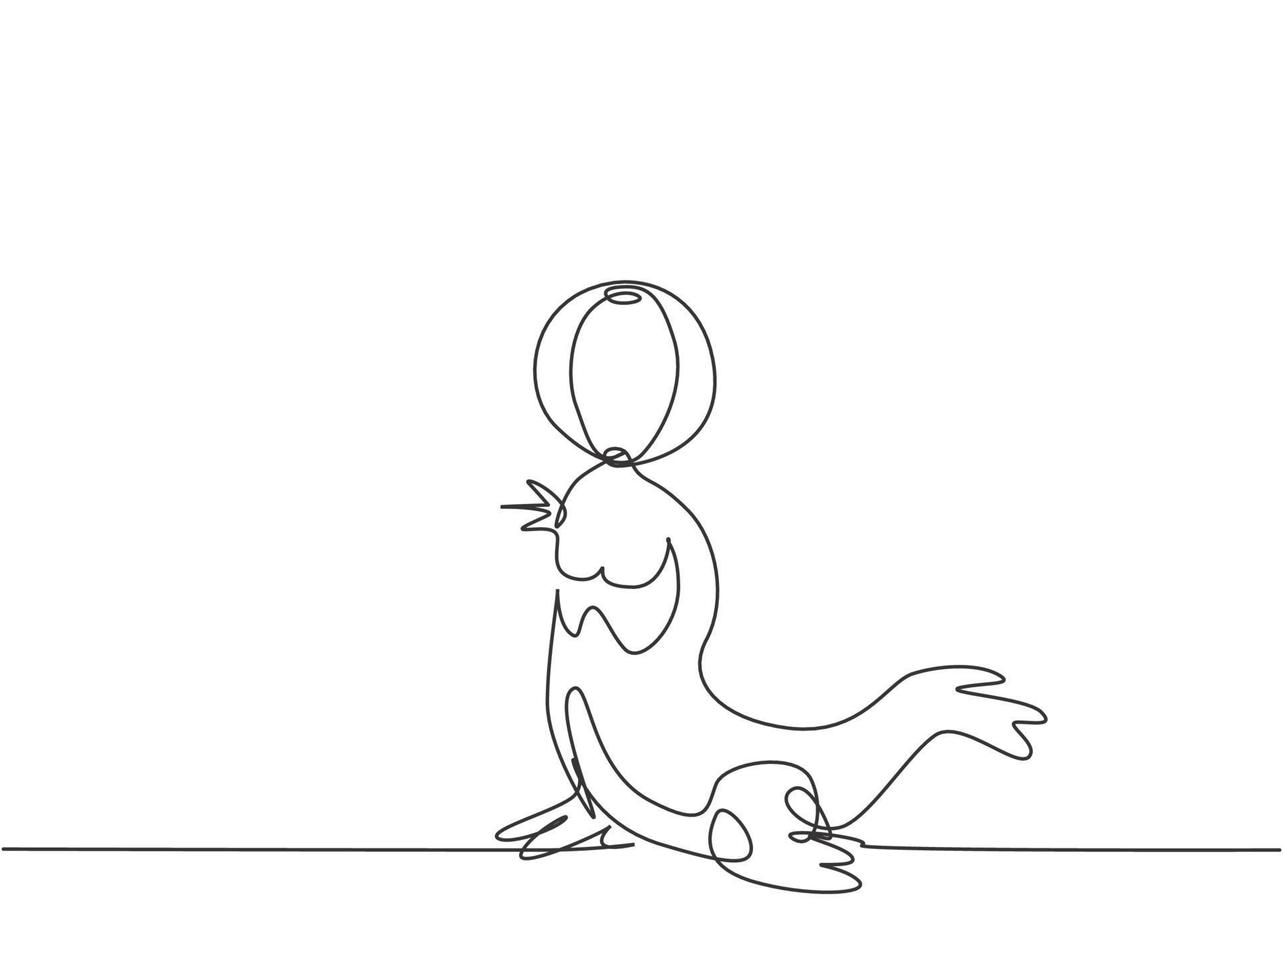 única linha contínua desenhando um leão-marinho fazendo uma manobra com uma bola listrada na boca. os leões-marinhos são altamente treinados em desempenho. dinâmica de uma linha desenhar ilustração em vetor design gráfico.